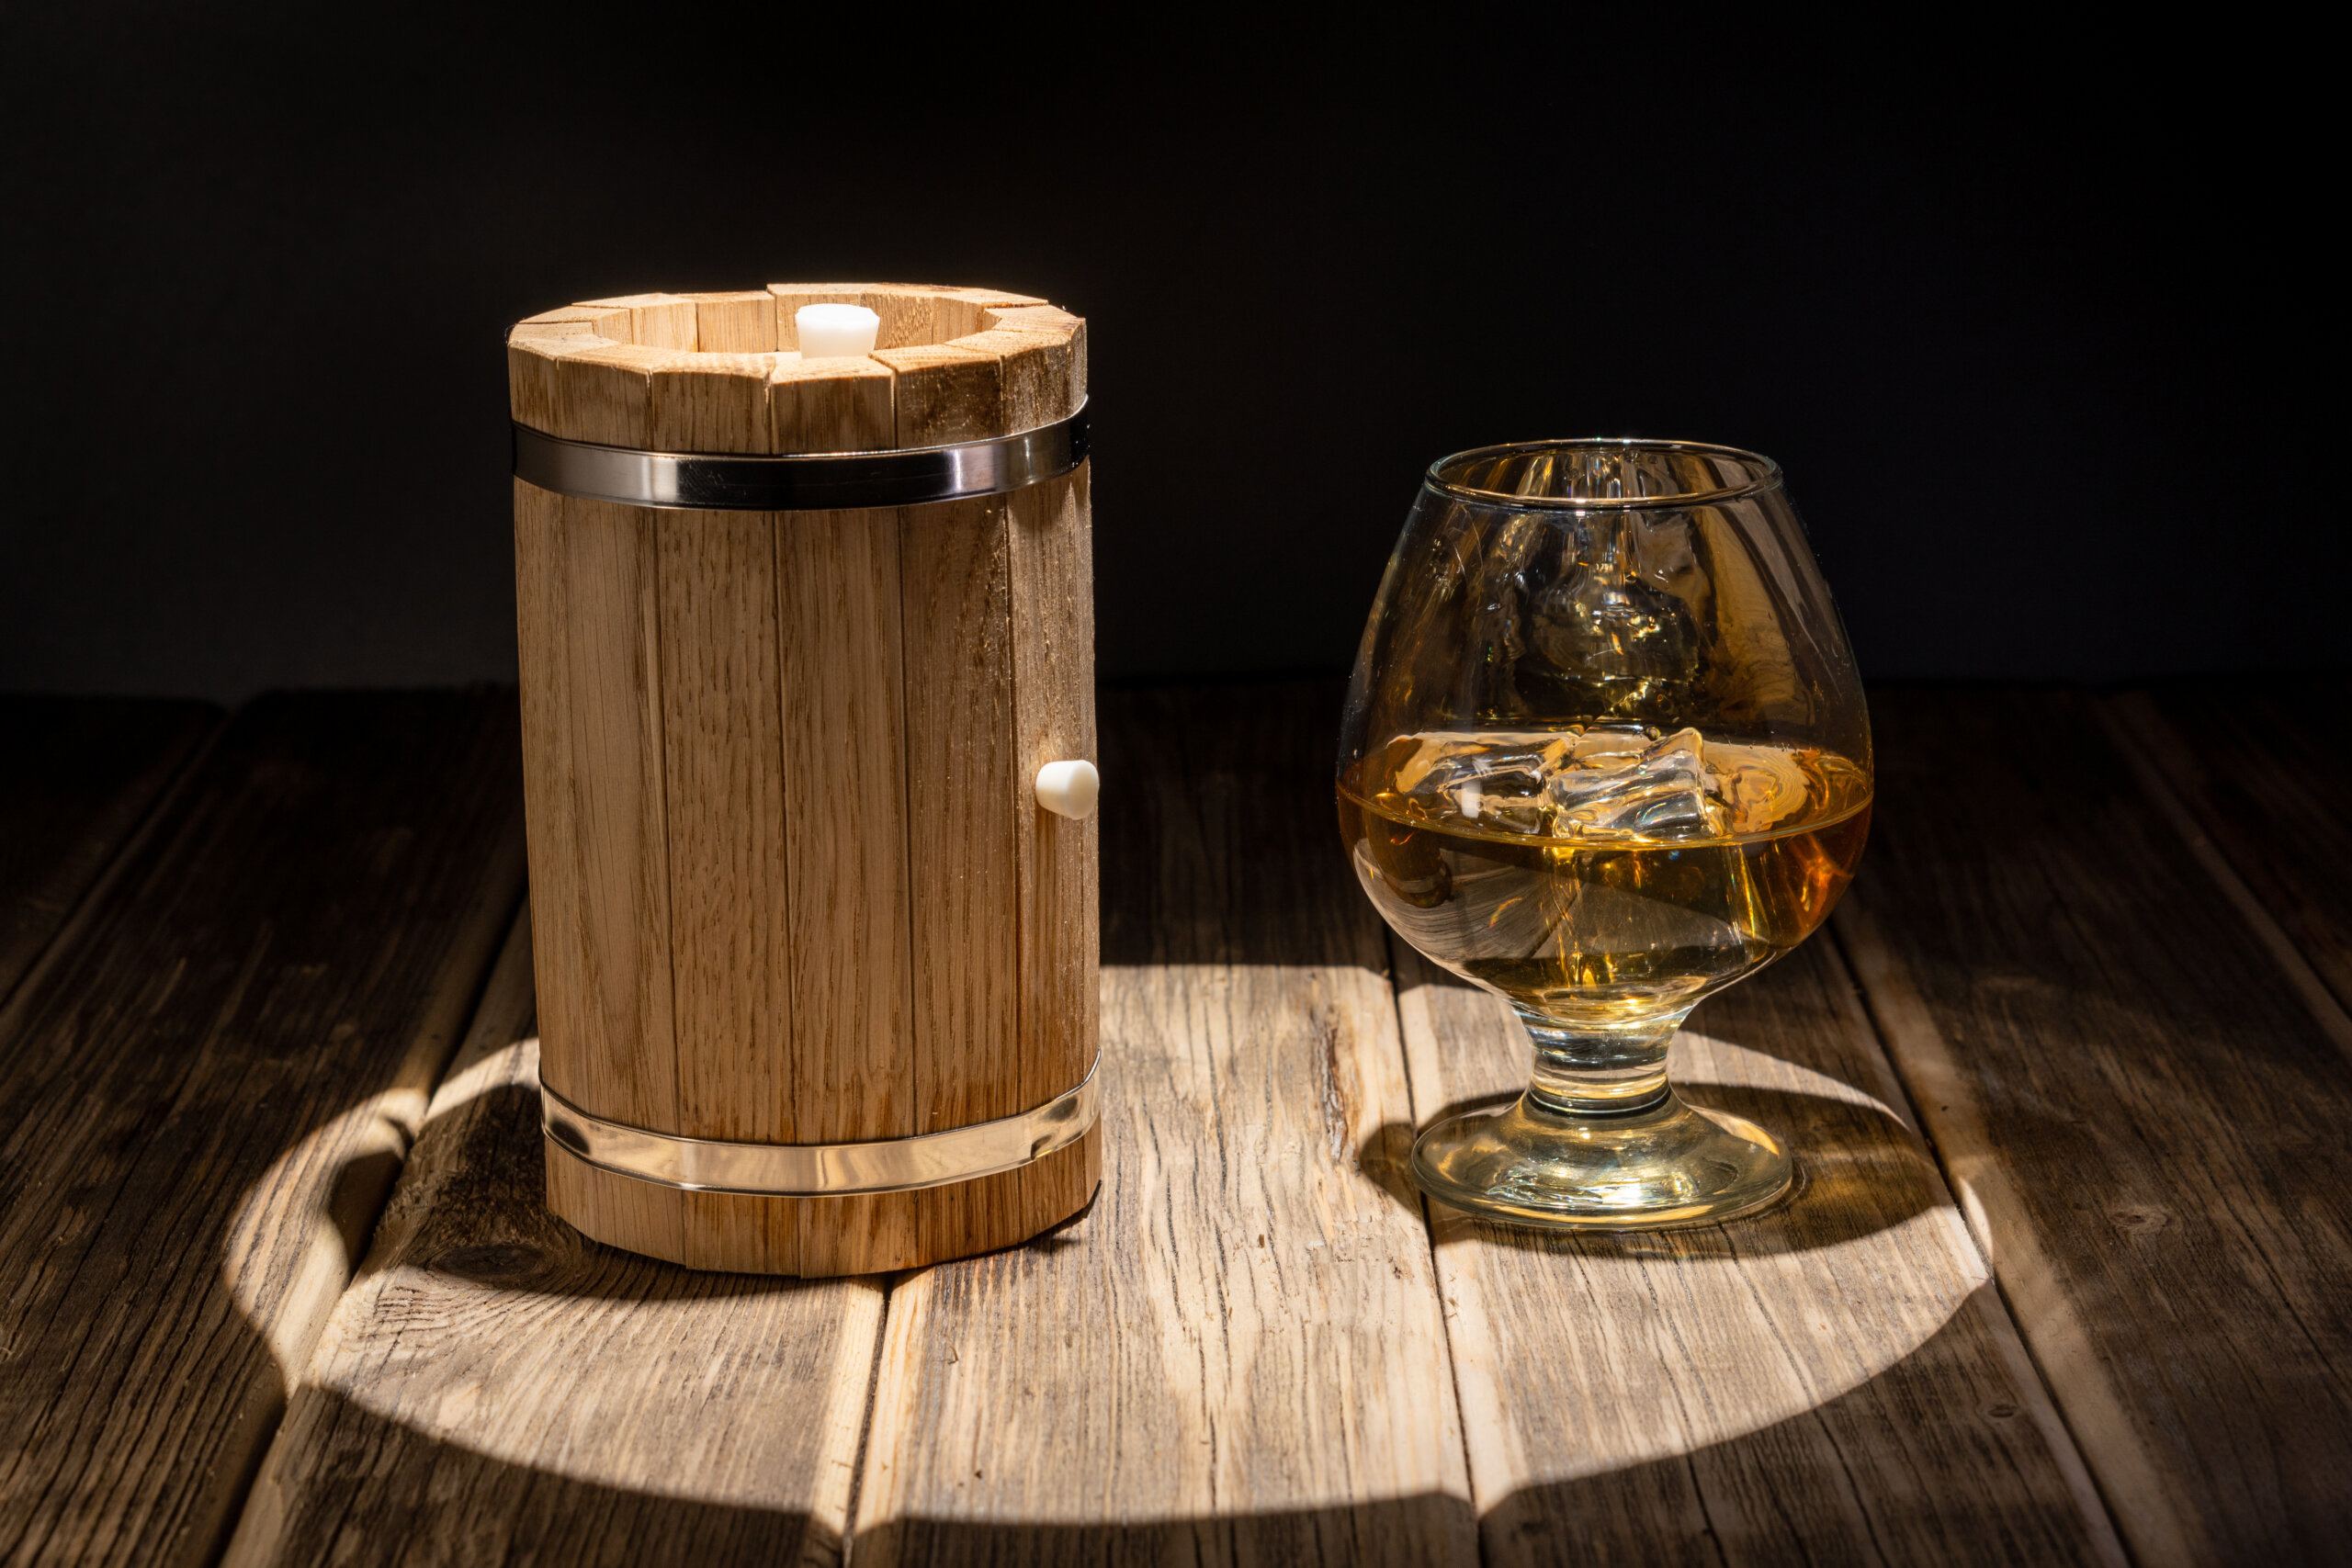 ウイスキーを熟成させるオーク樽とは？ 木材を含めた種類について 